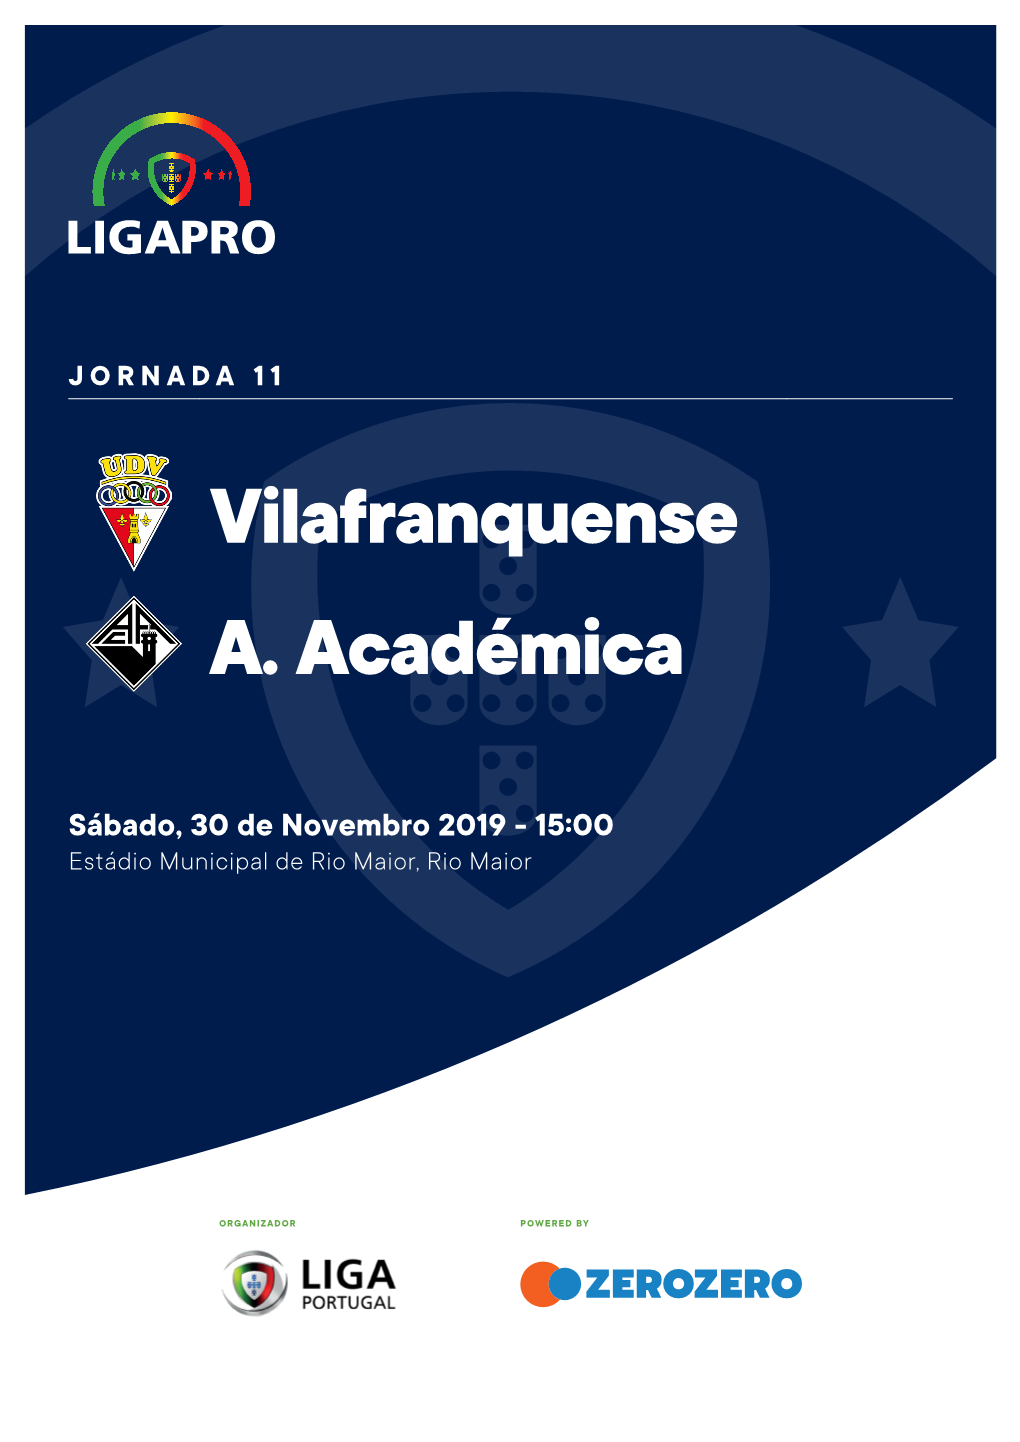 Vilafranquense A. Académica